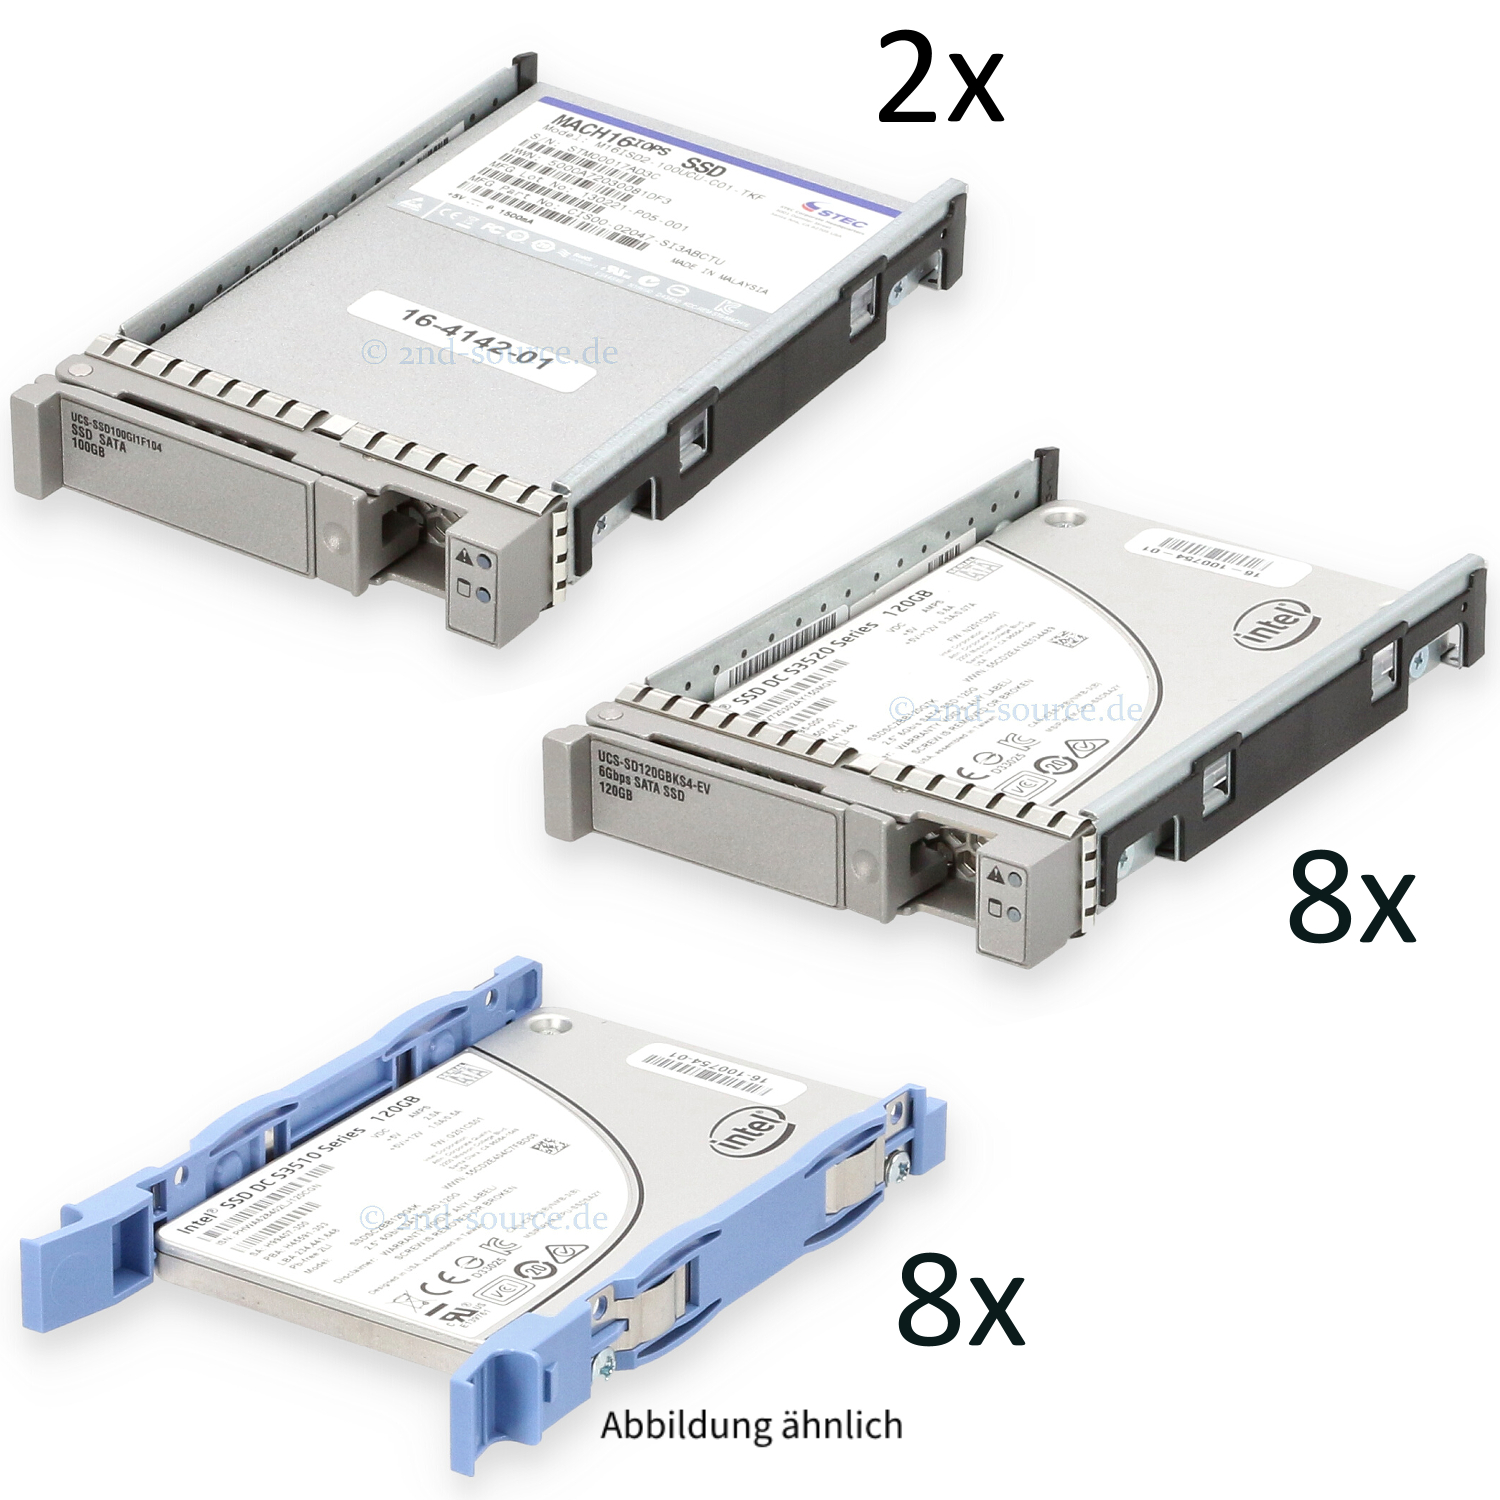 Cisco Bundle mit diversen SSDs